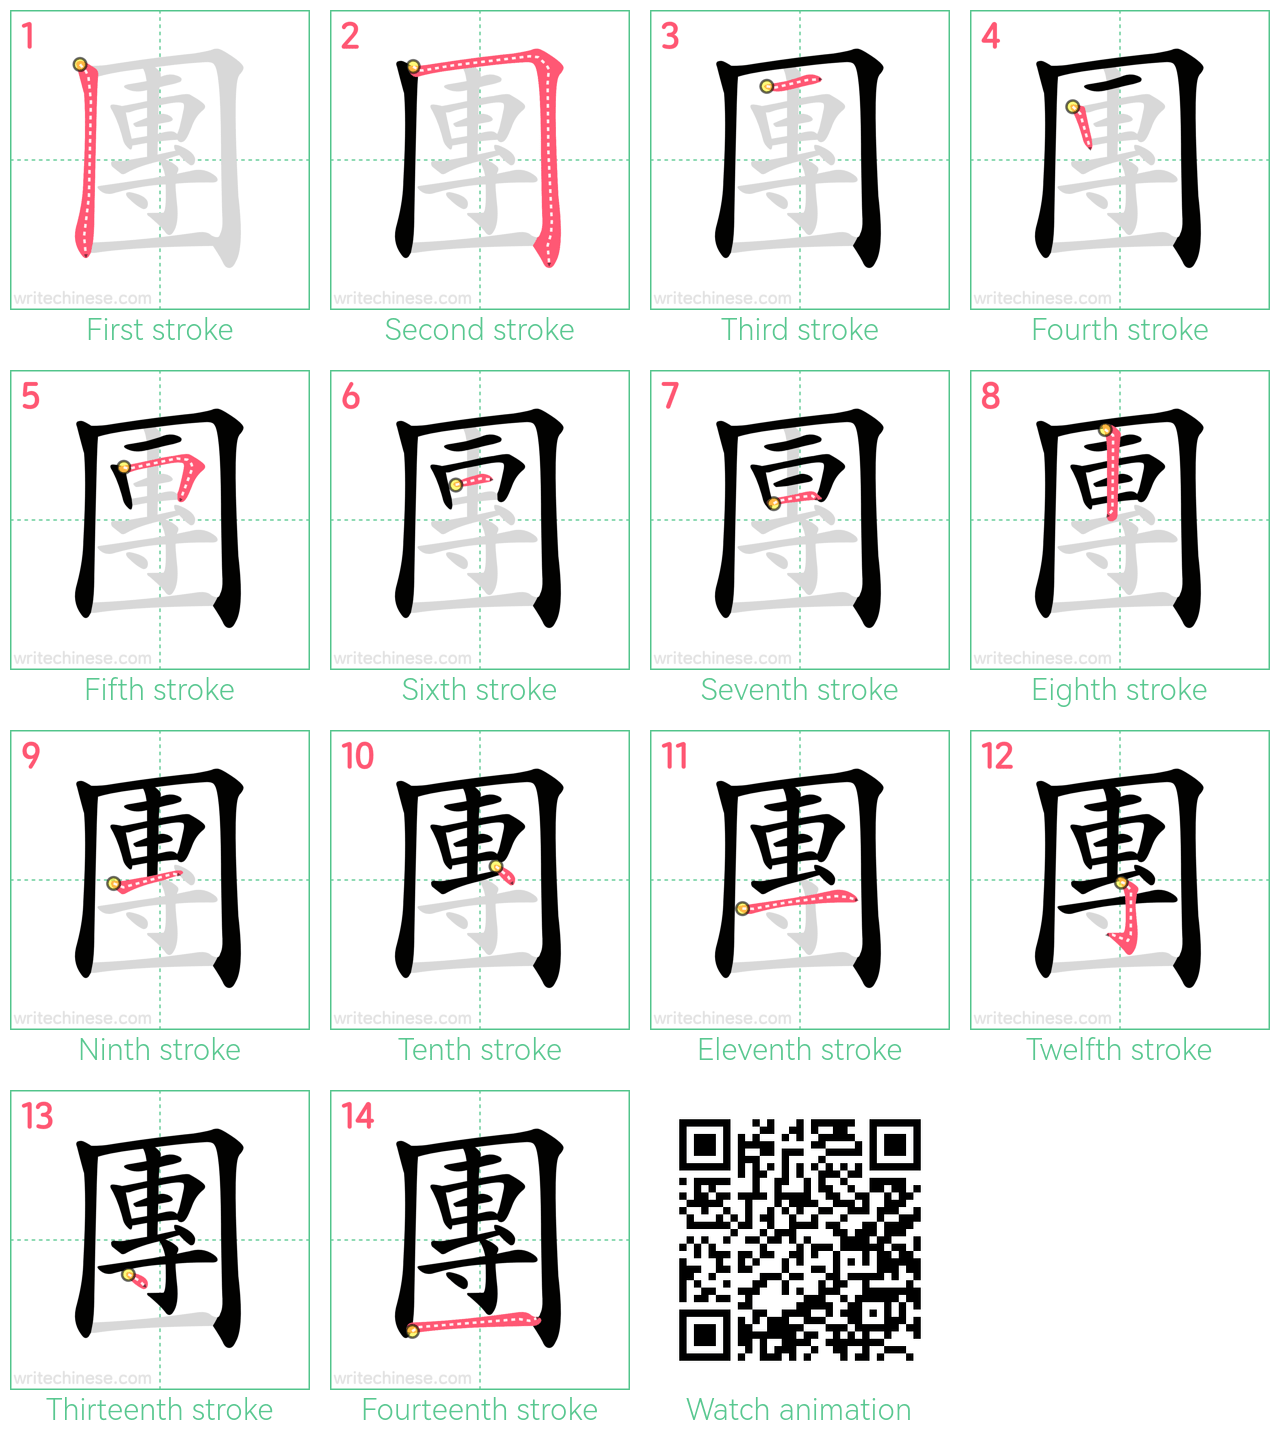 團 step-by-step stroke order diagrams